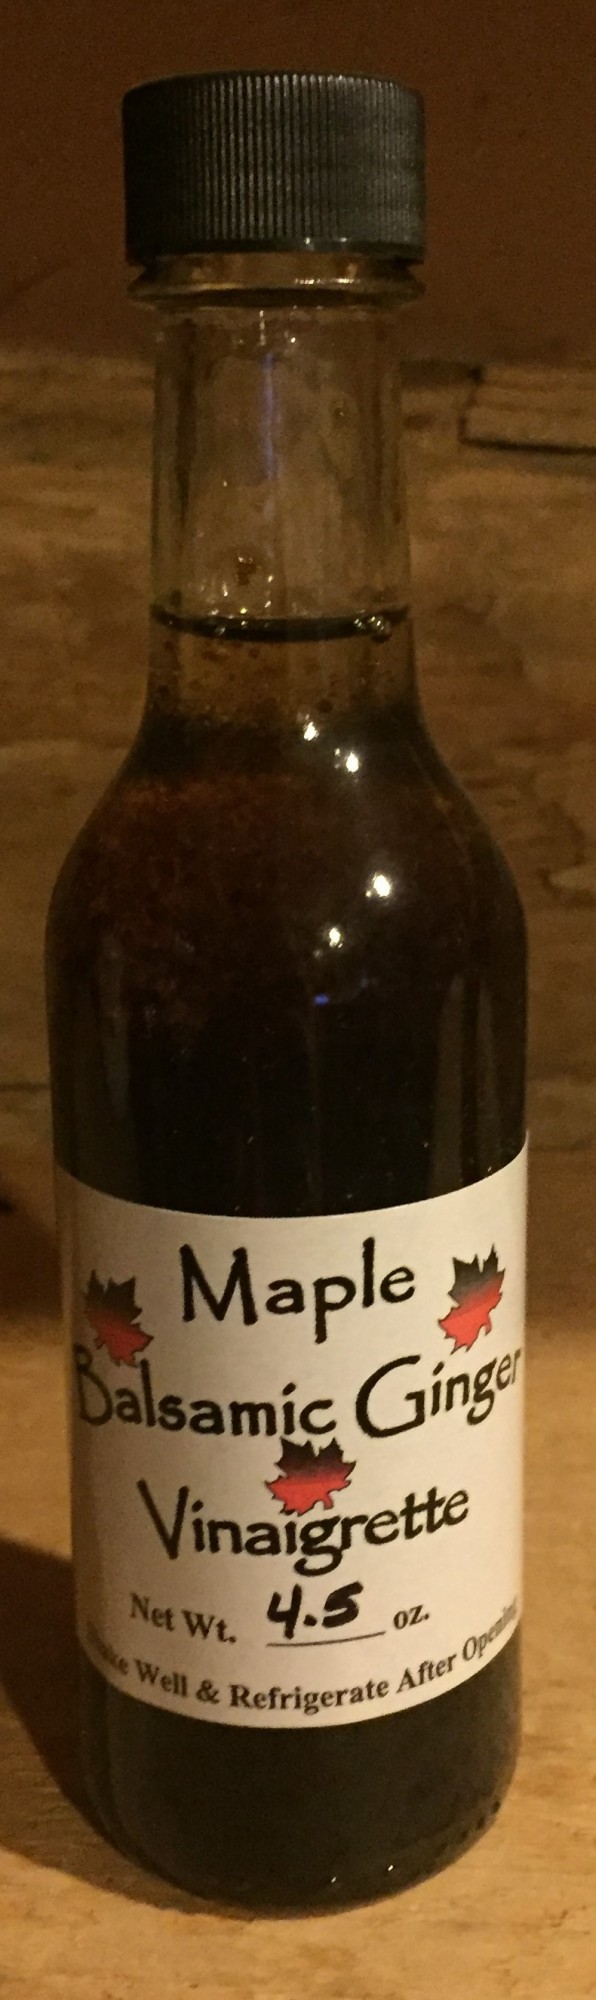 Maple Balsamic Ginger Vinaigrette 